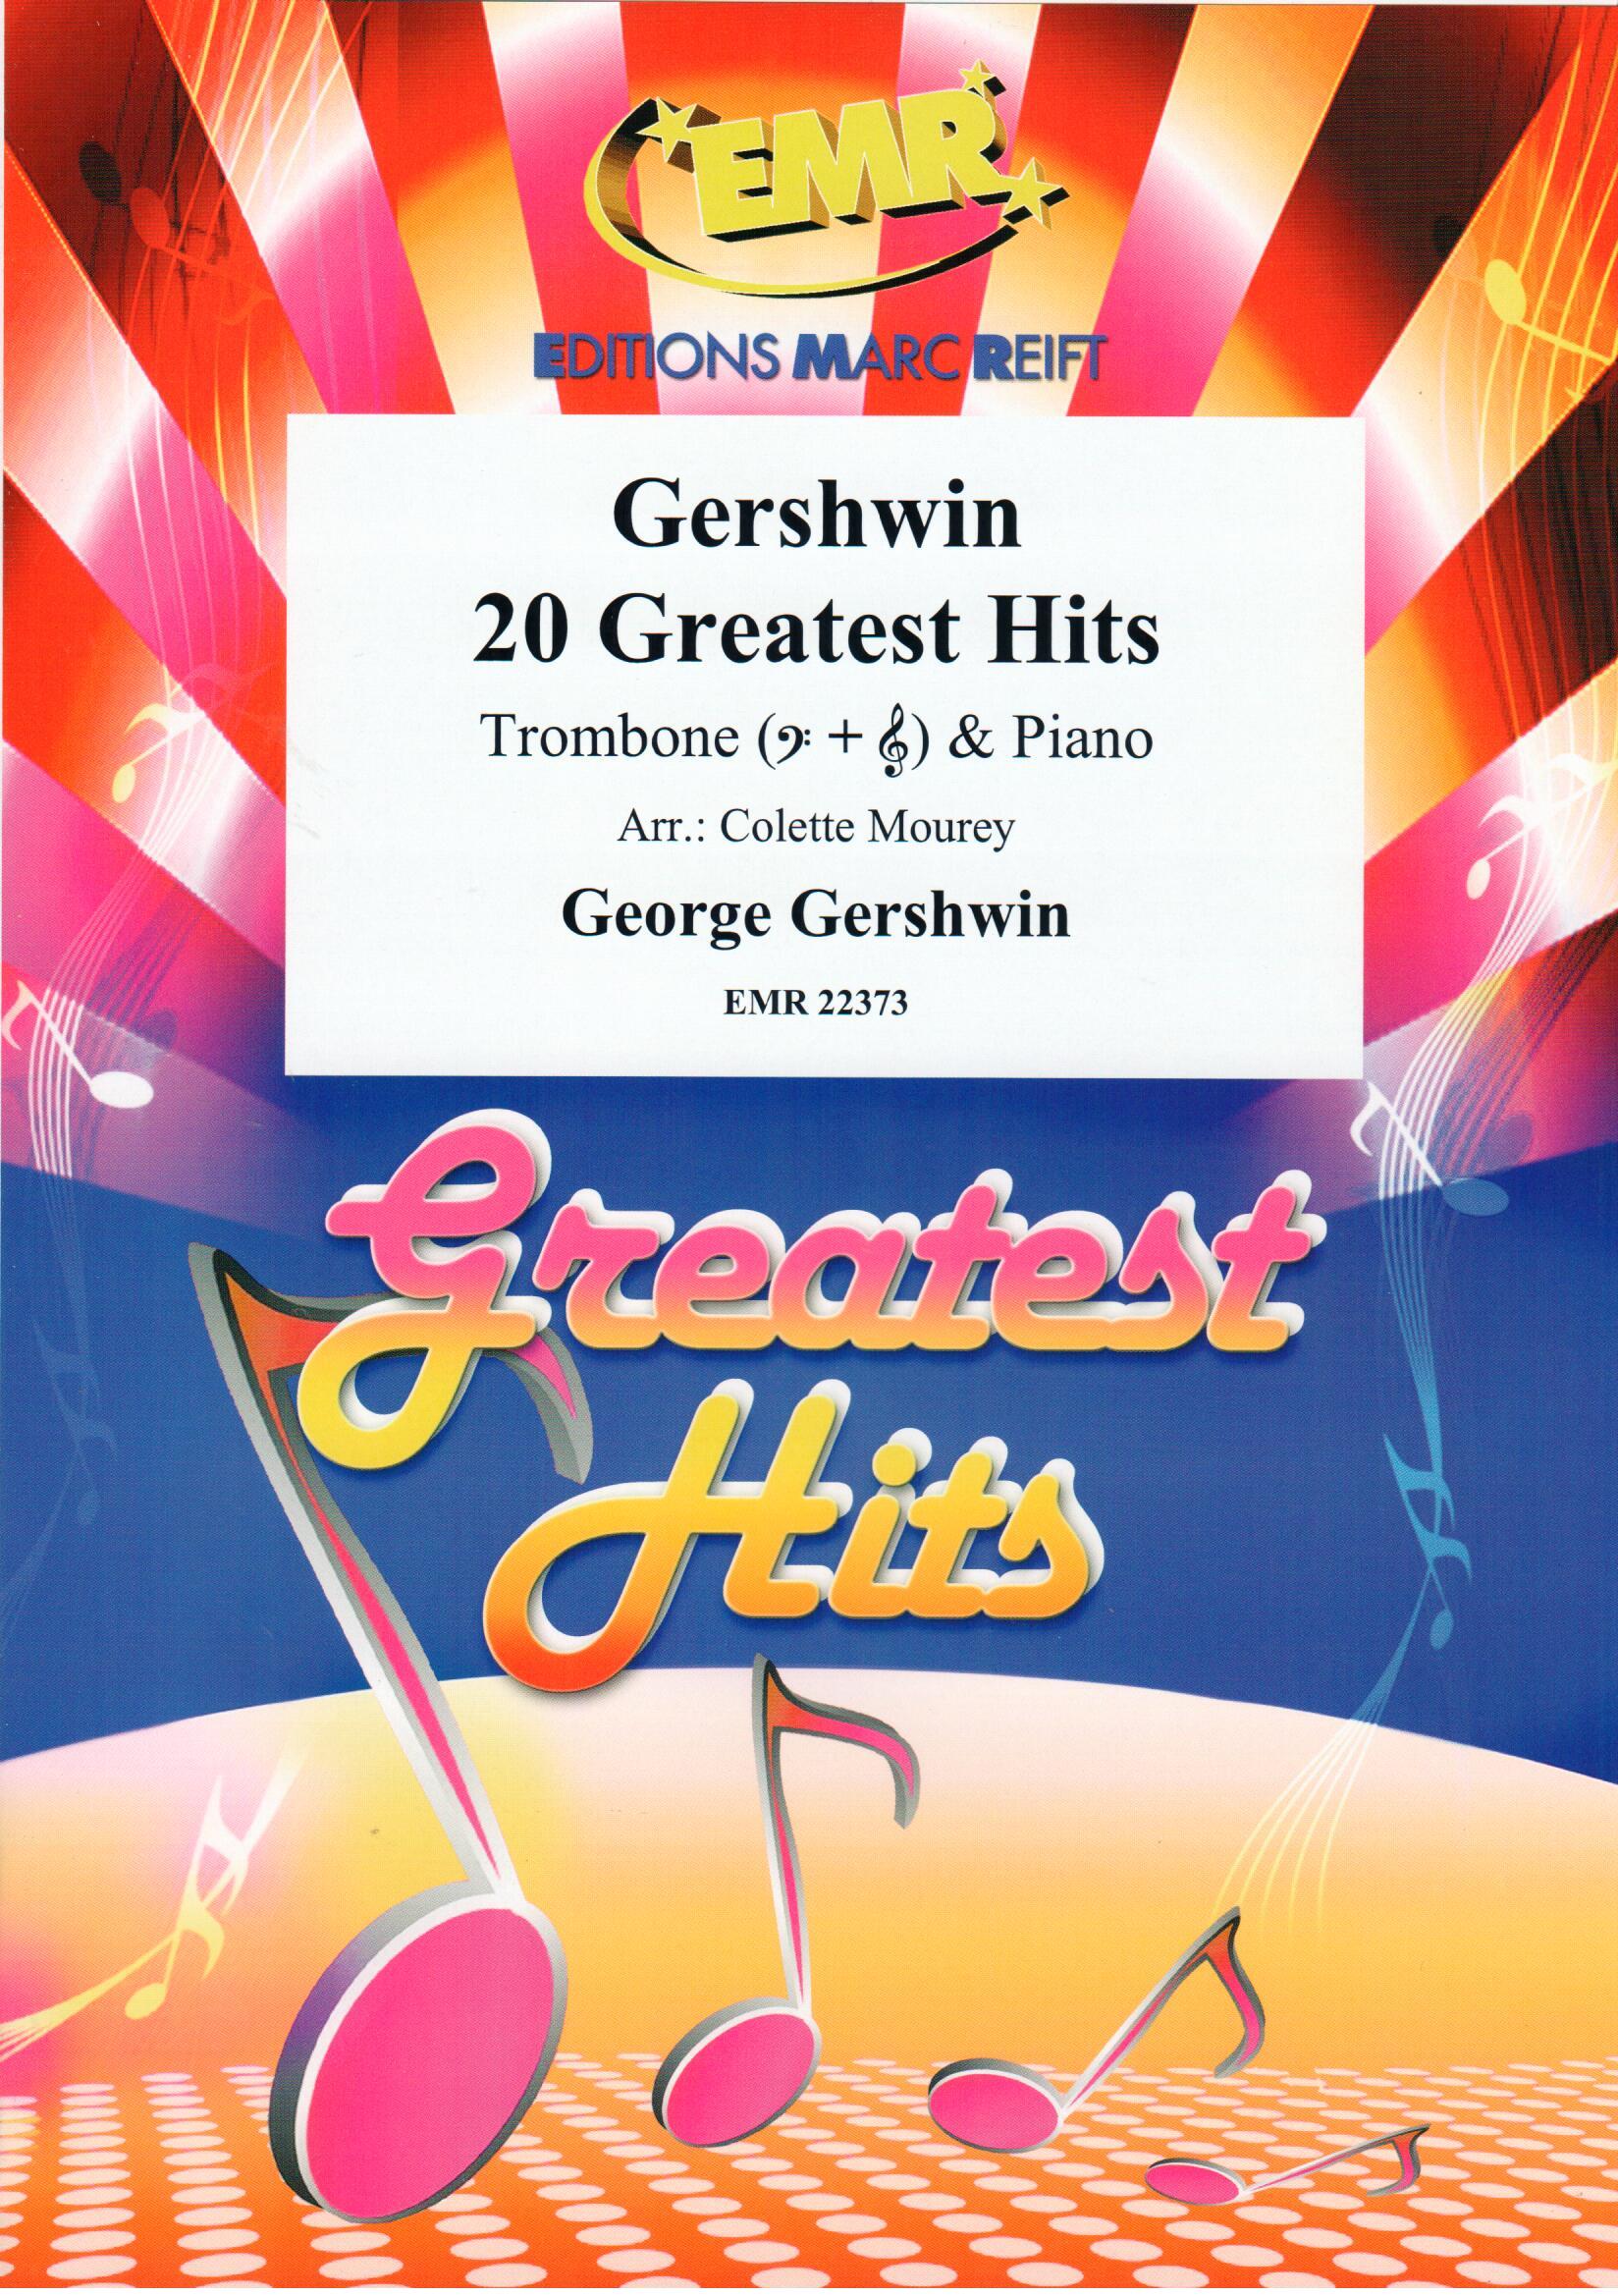 GERSHWIN 20 GREATEST HITS, SOLOS - Trombone